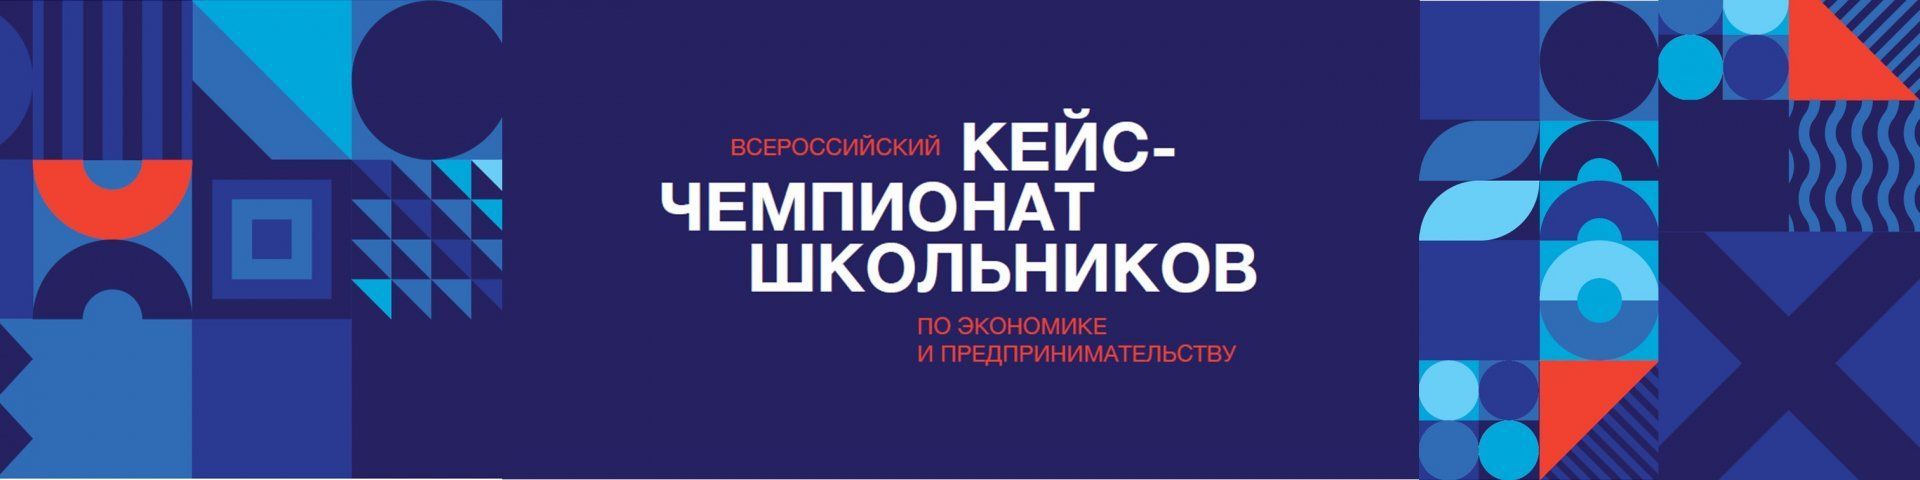 Всероссийский кейс-чемпионат школьников по экономике и предпринимательству